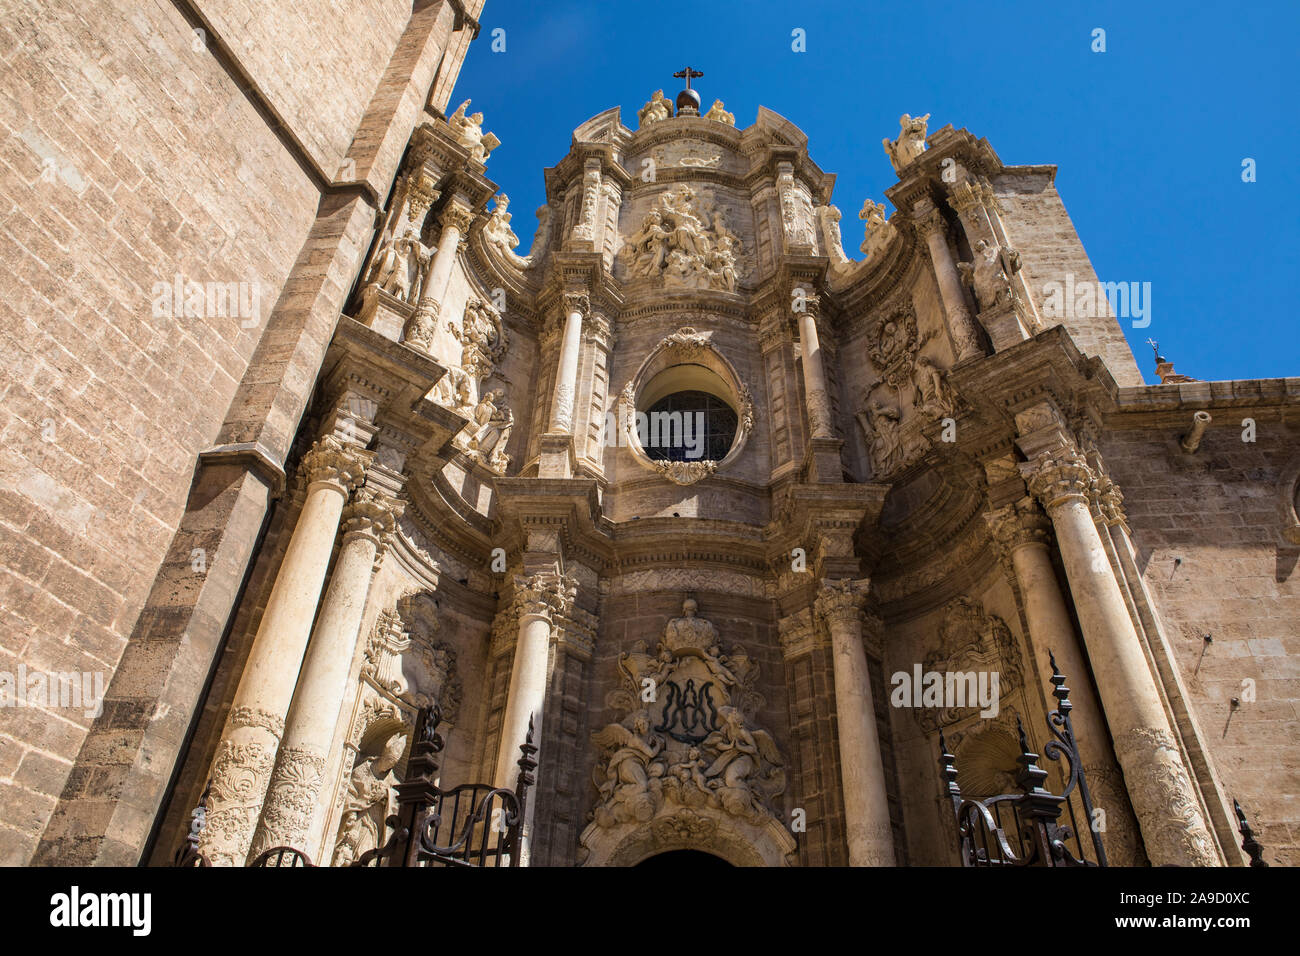 Une vue sur le quartier historique de la cathédrale de Valence dans la ville de Valence, Espagne. Banque D'Images